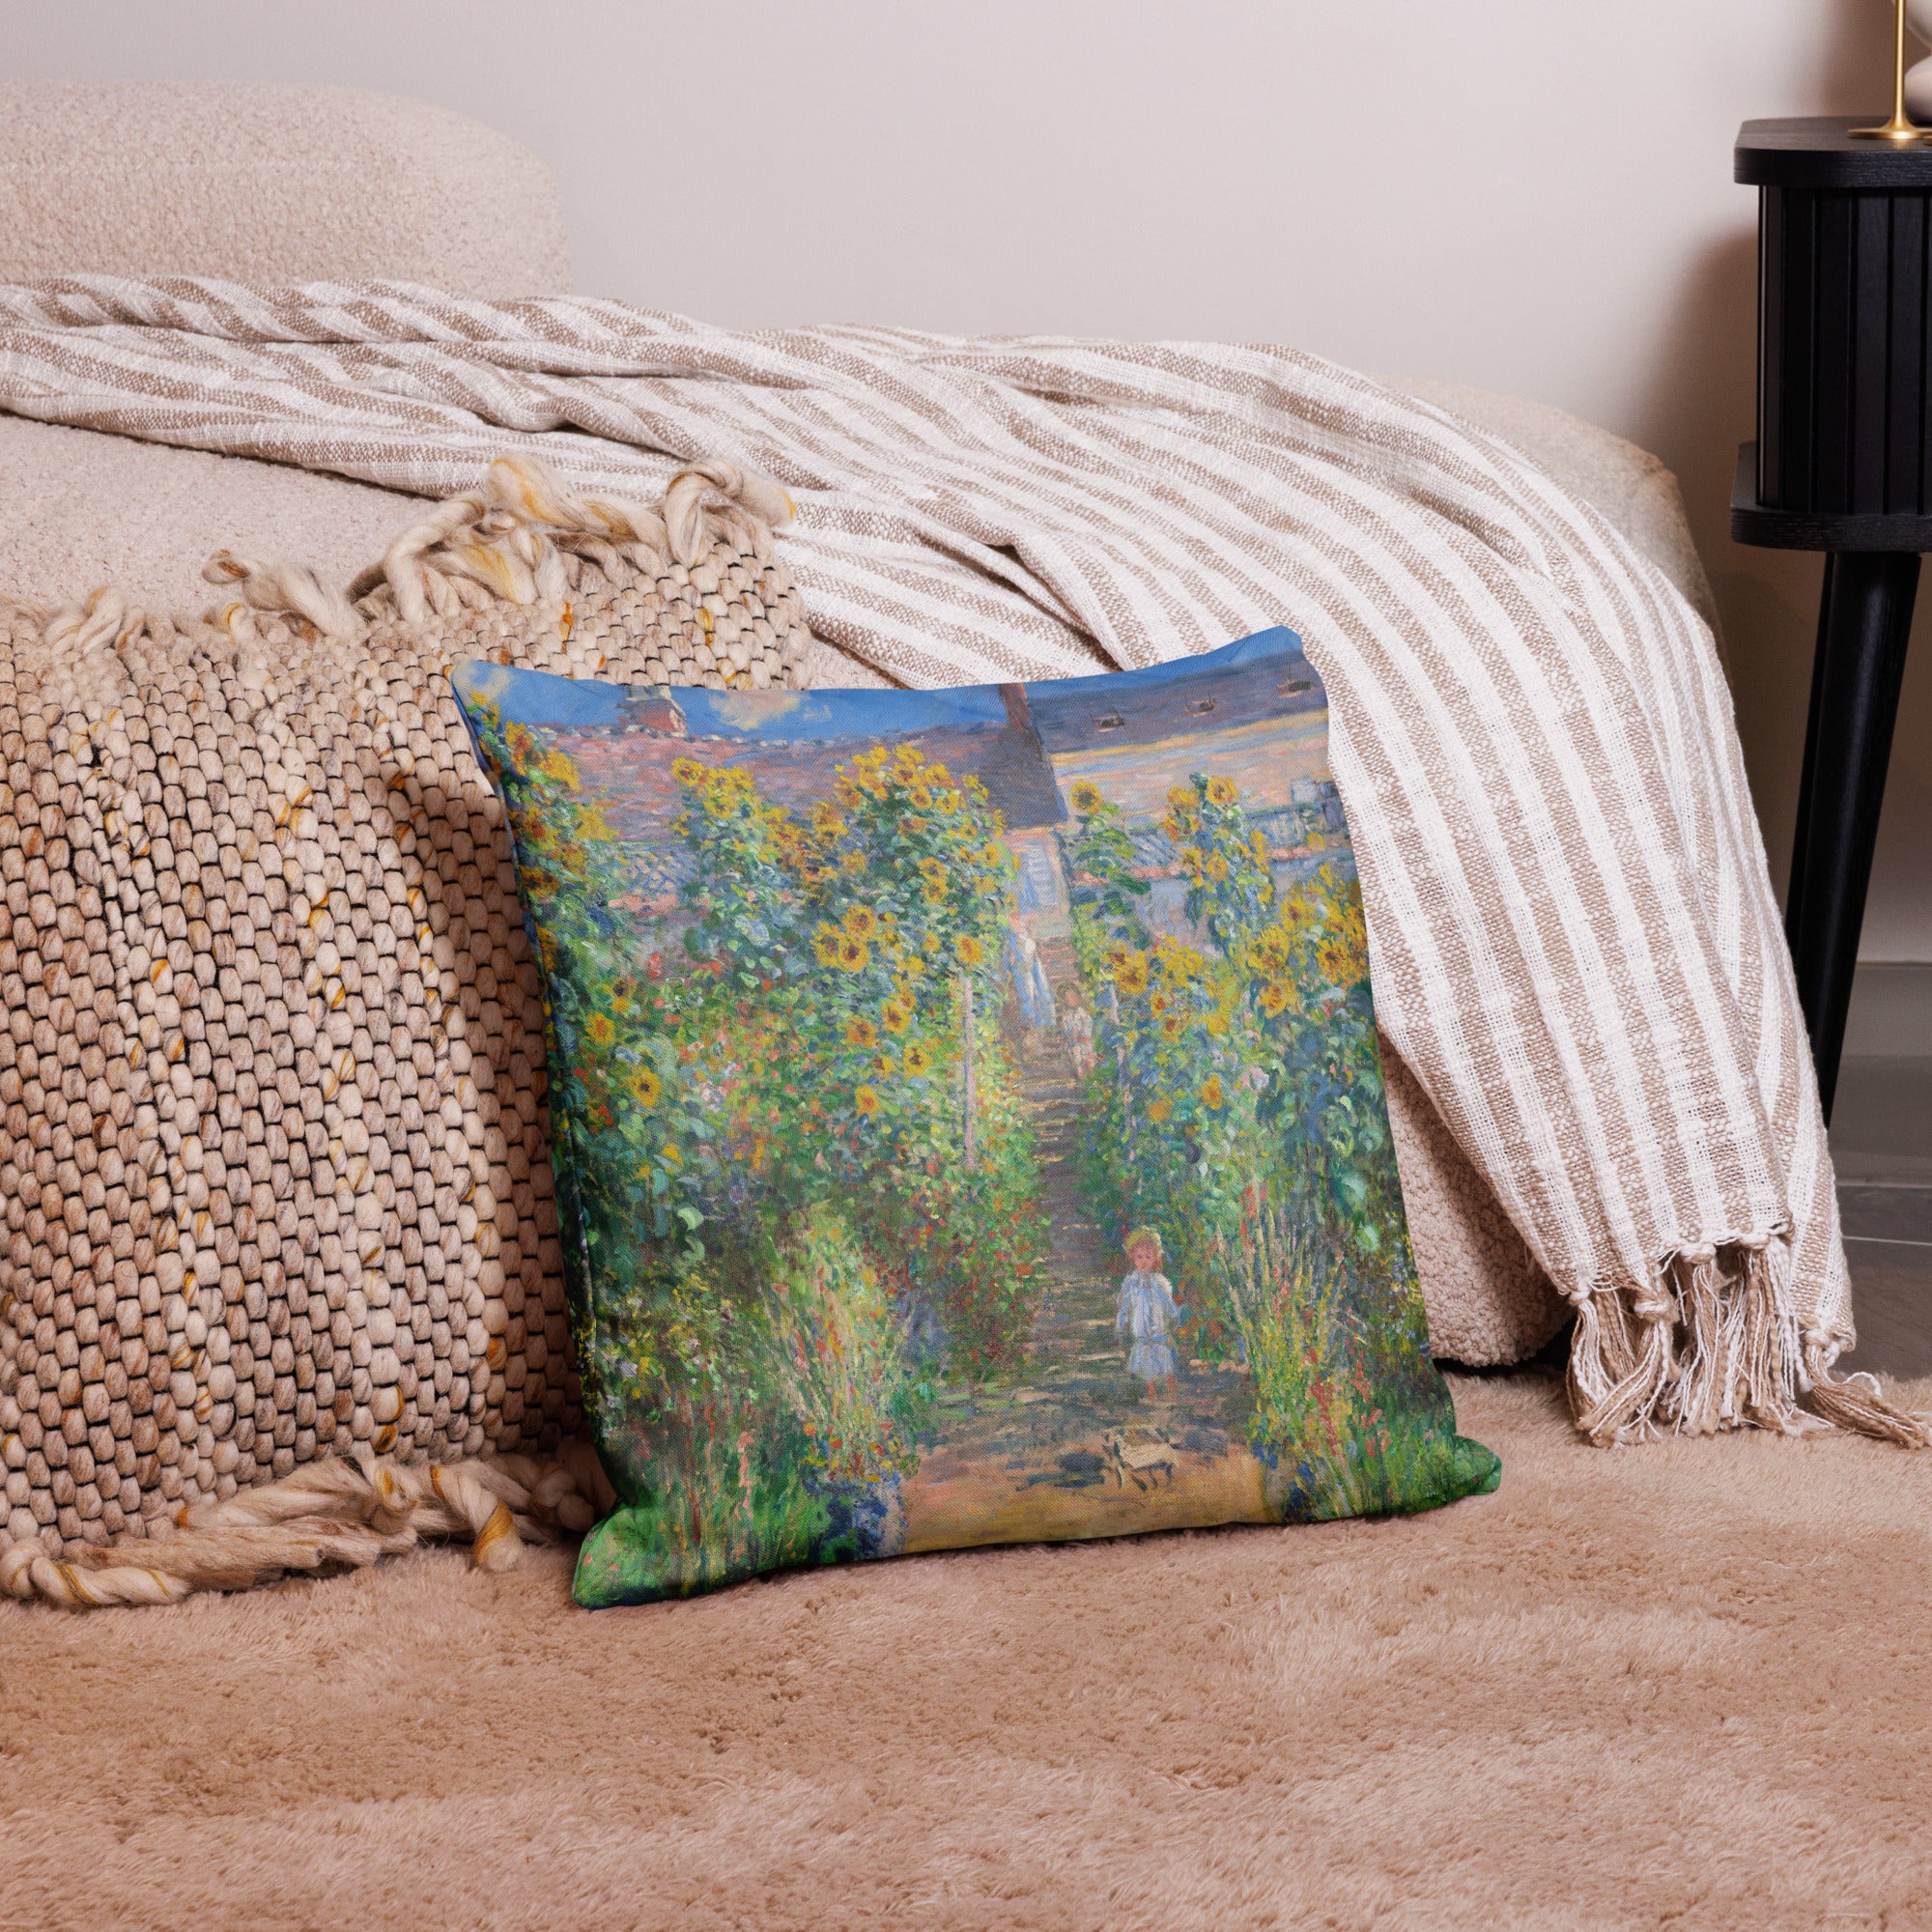 Claude Monet 'The Artist's Garden at Vétheuil' Famous Painting Premium Pillow | Premium Art Cushion